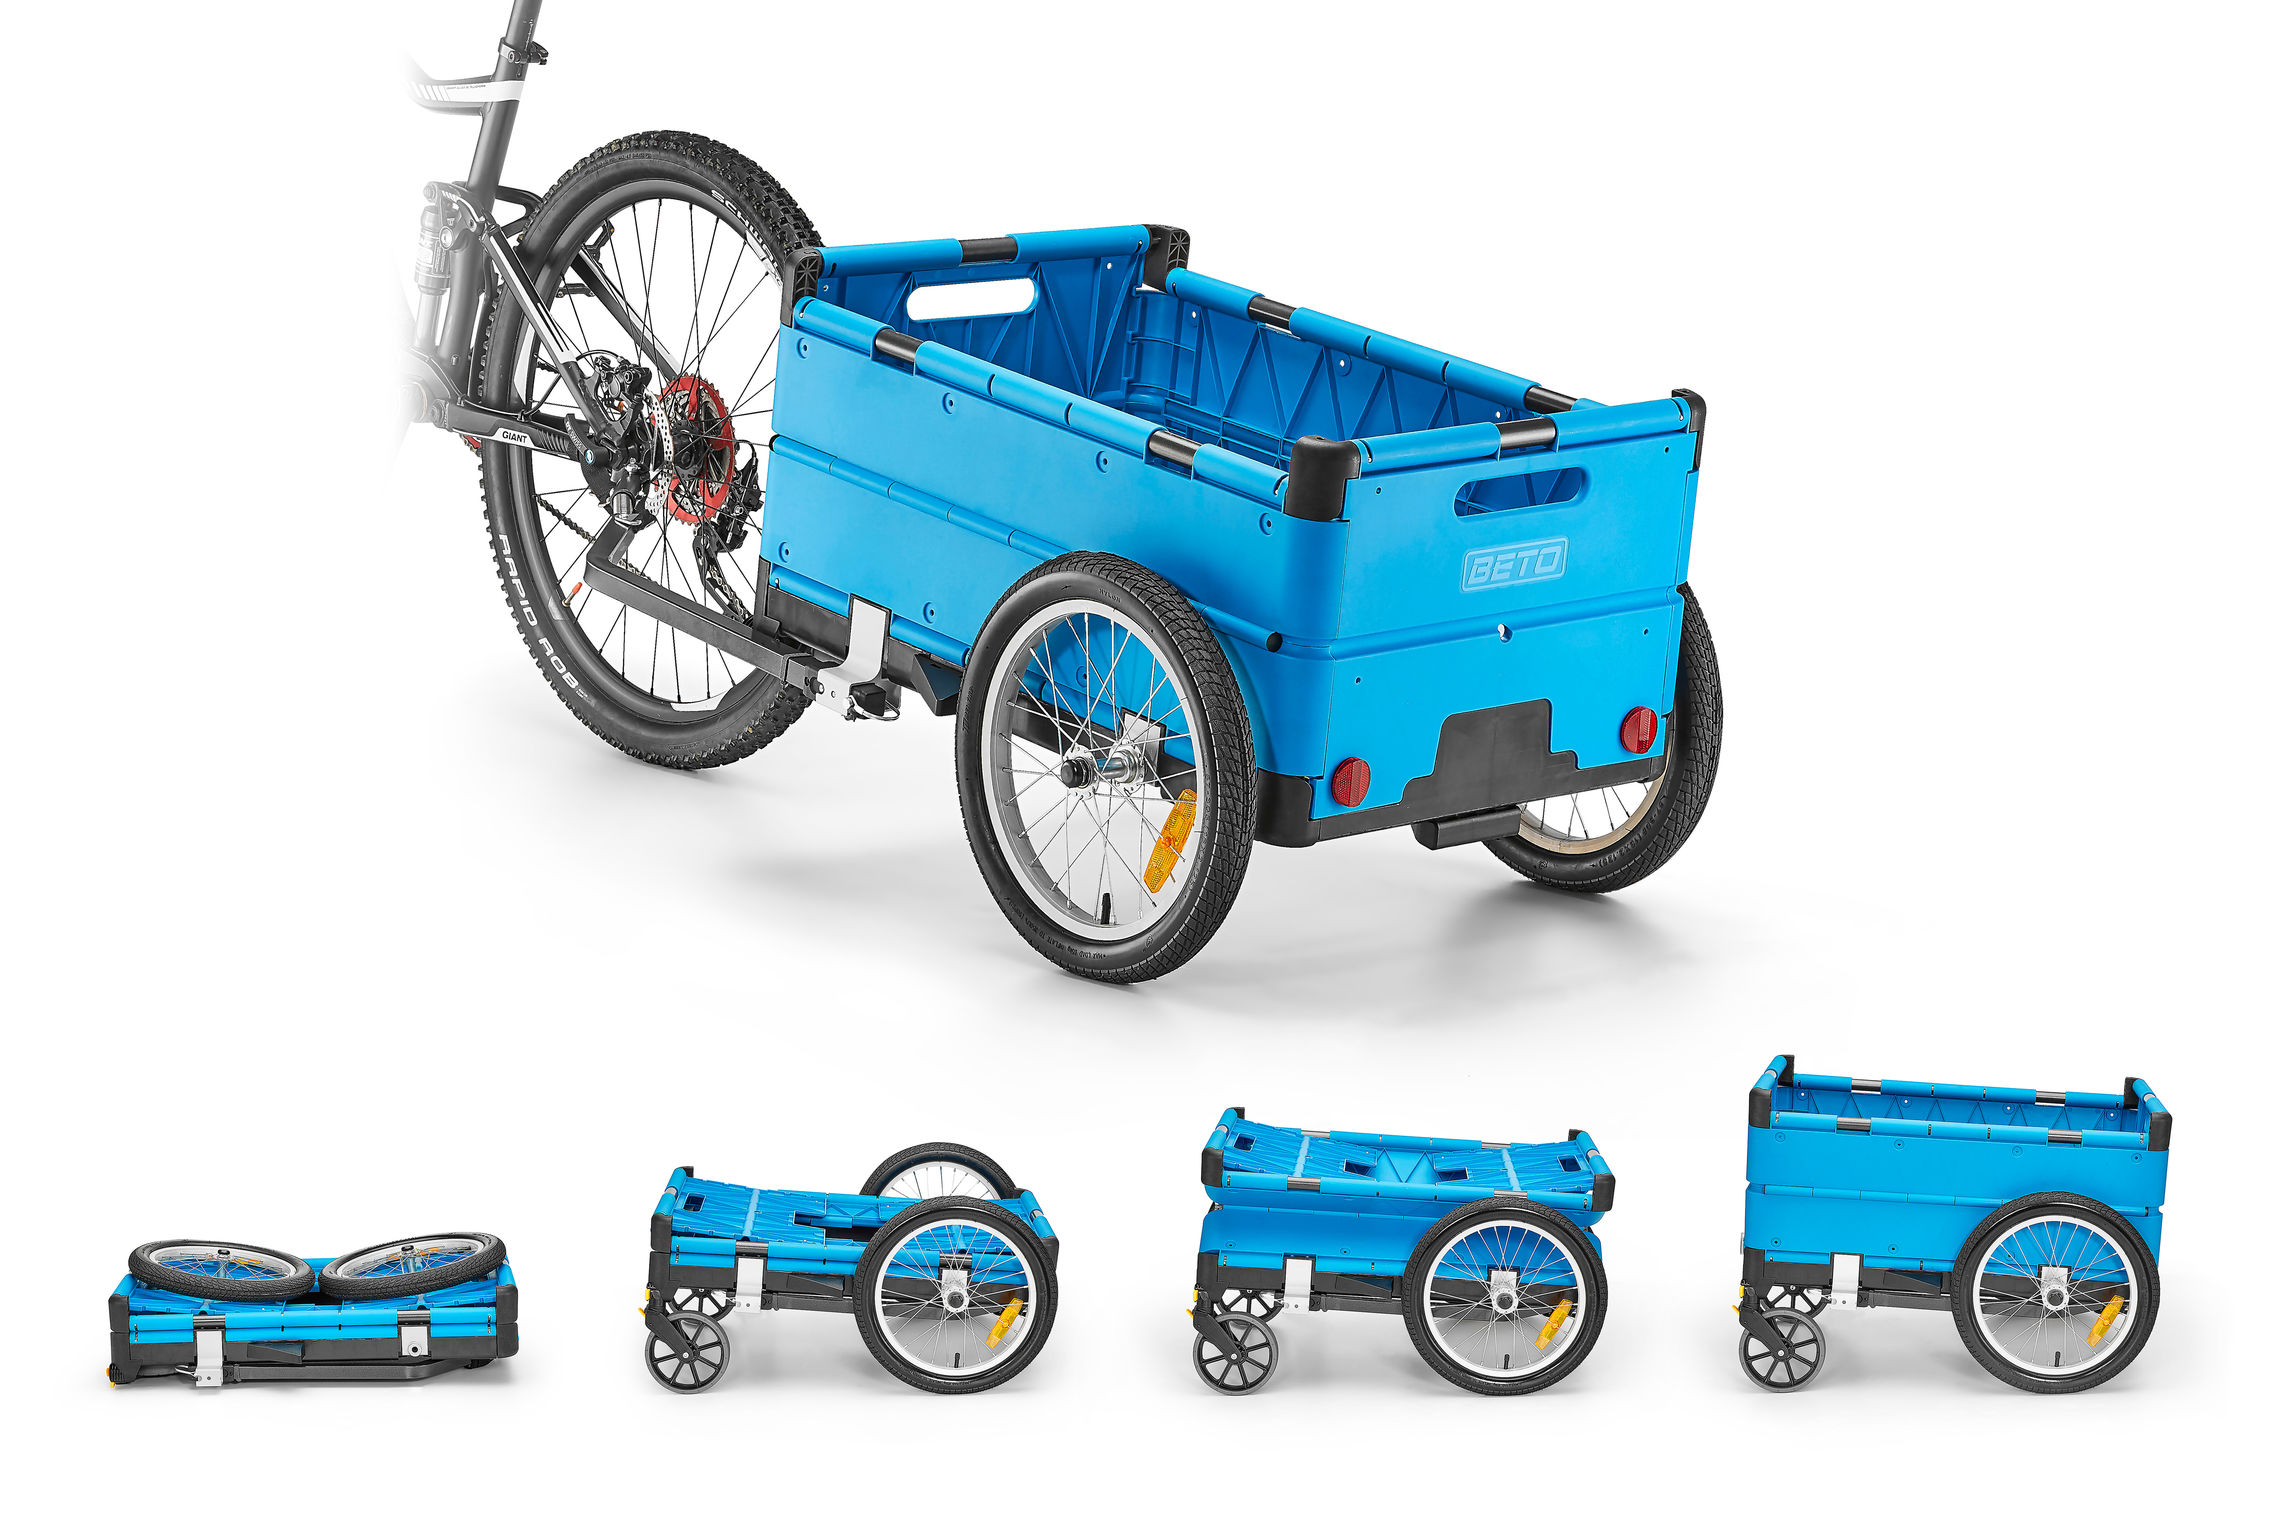 bike cargo trailer